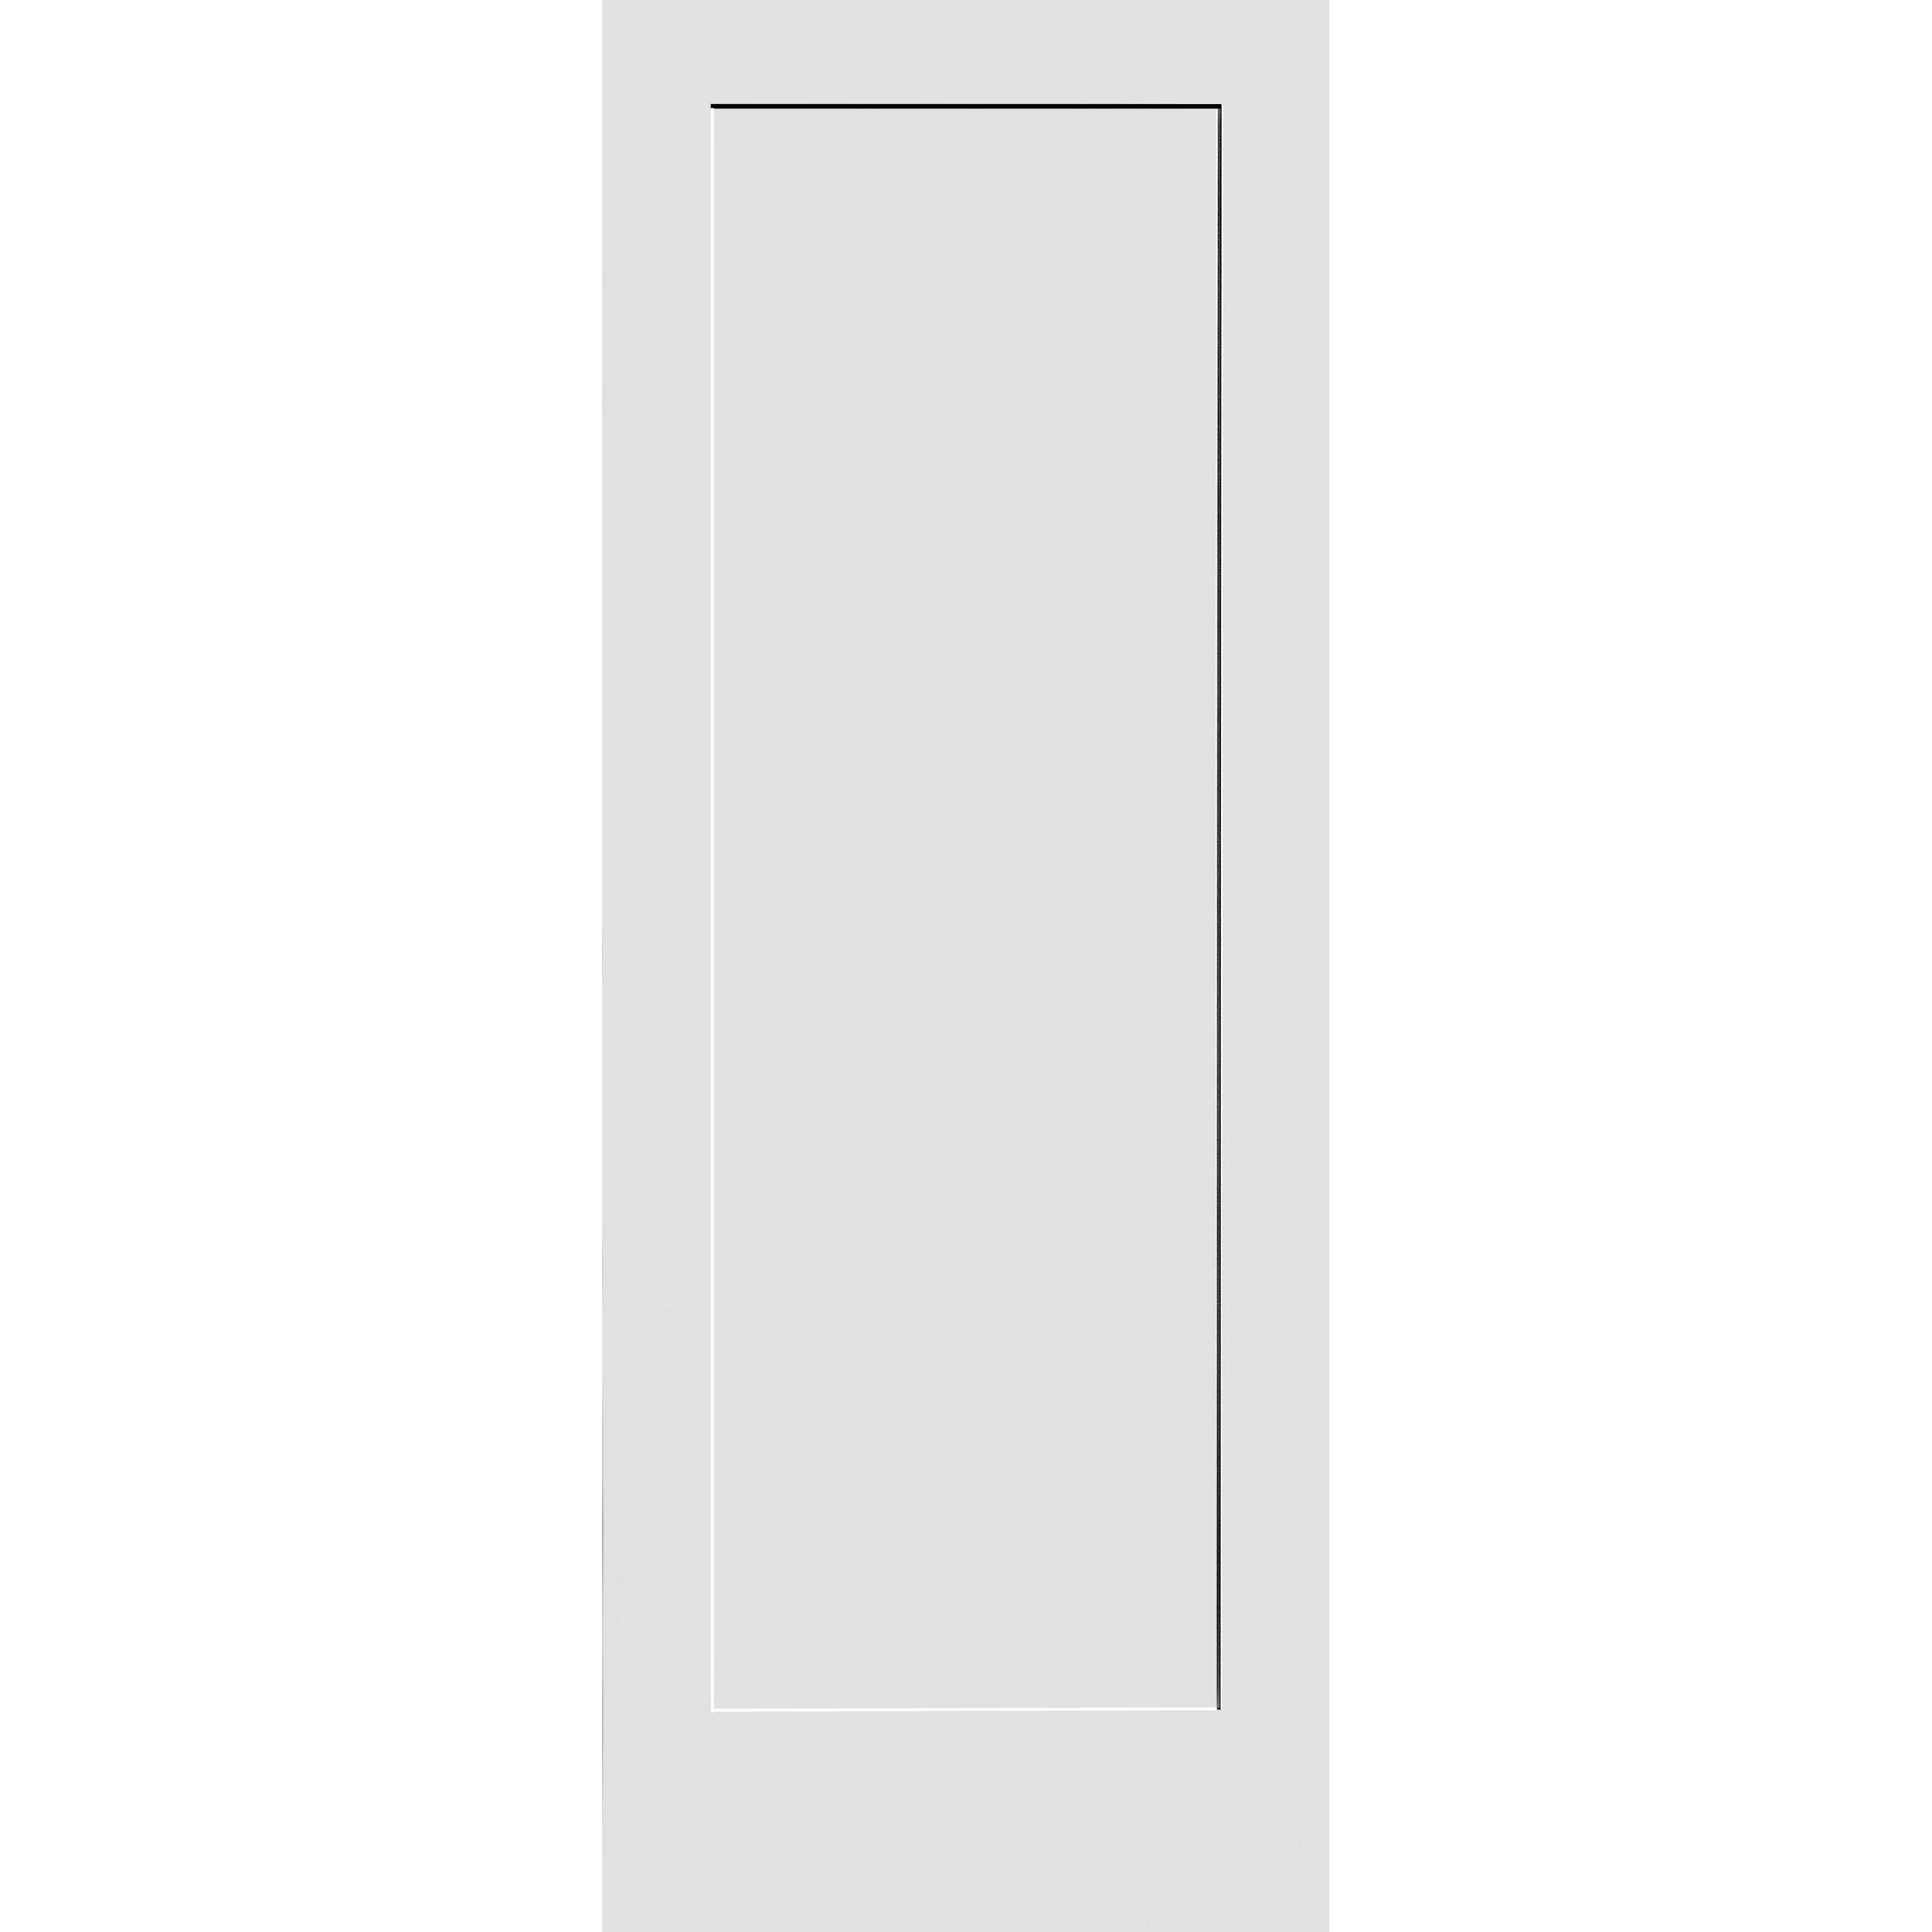 24X96 #8401 MDF PRIMED SHAKER PANEL INTERIOR DOOR